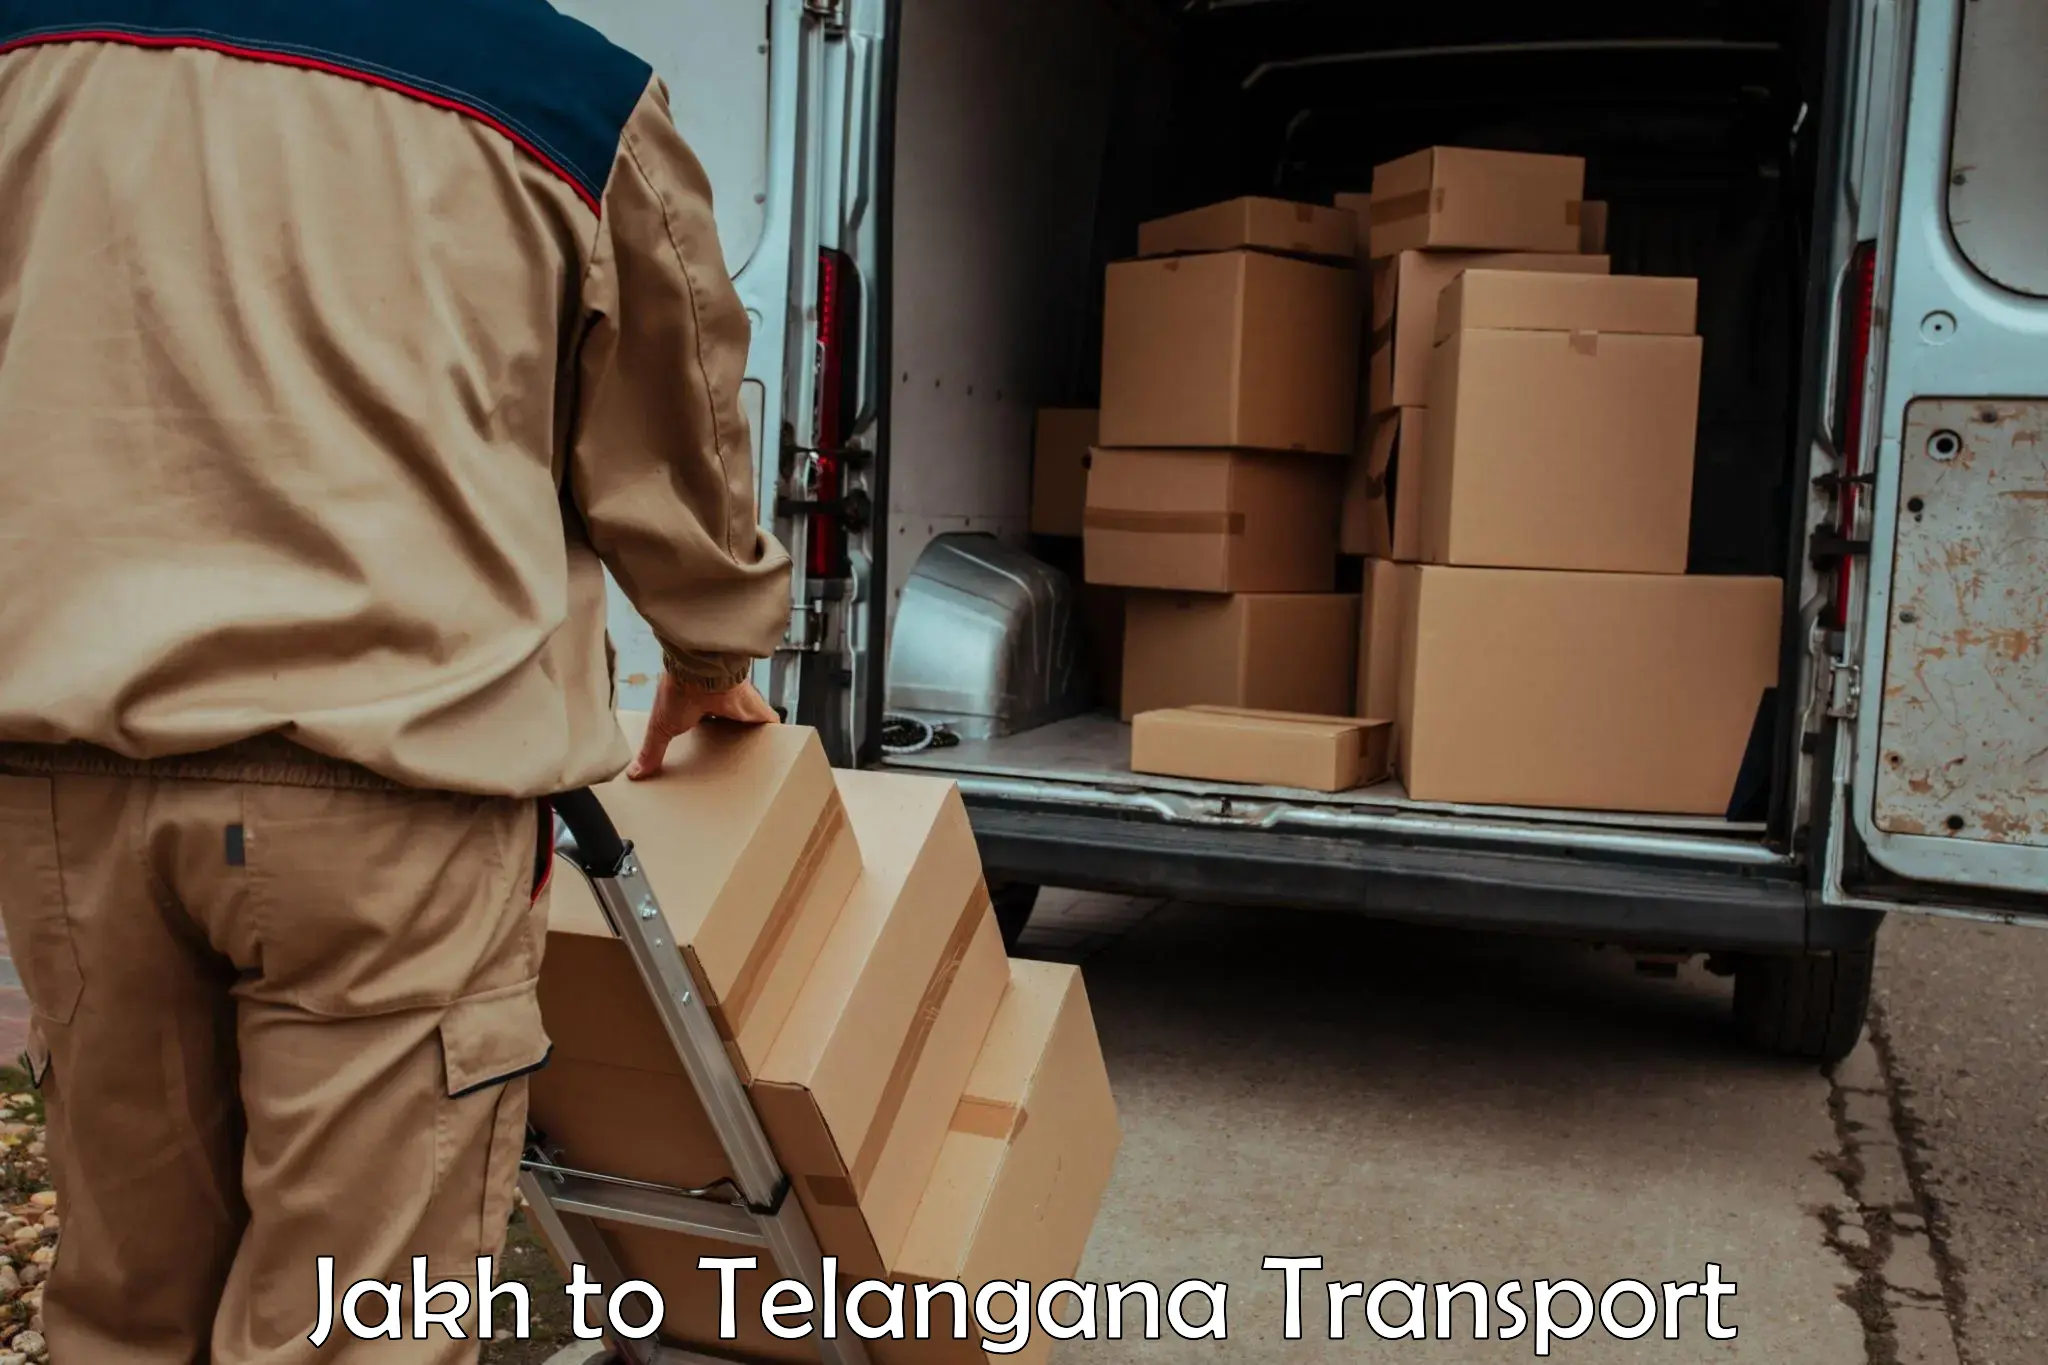 Vehicle transport services Jakh to Thungathurthi